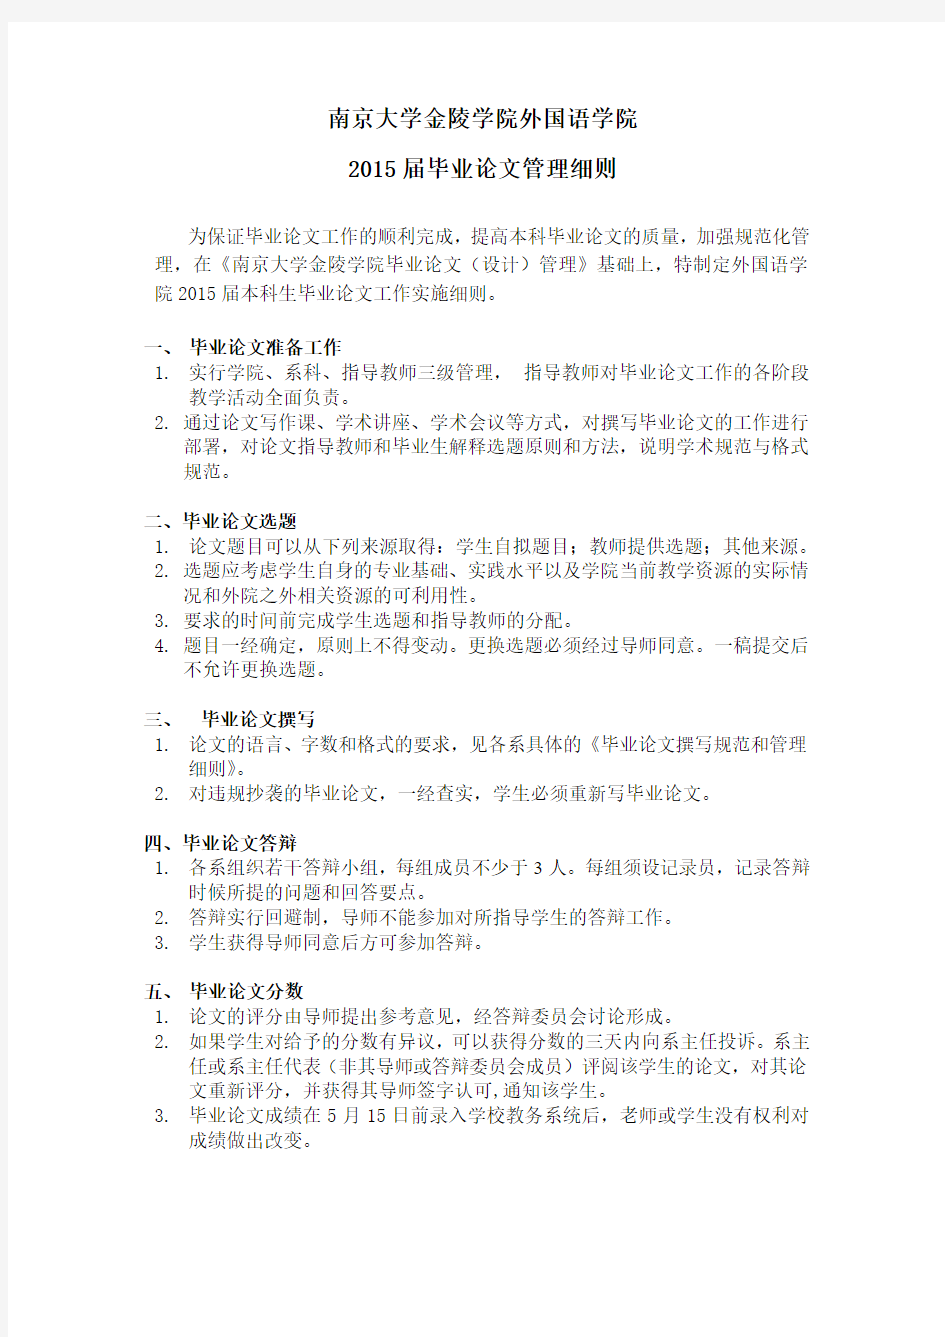 南京大学金陵学院外国语学院2015届毕业论文管理细则及德语管理要求(草稿)